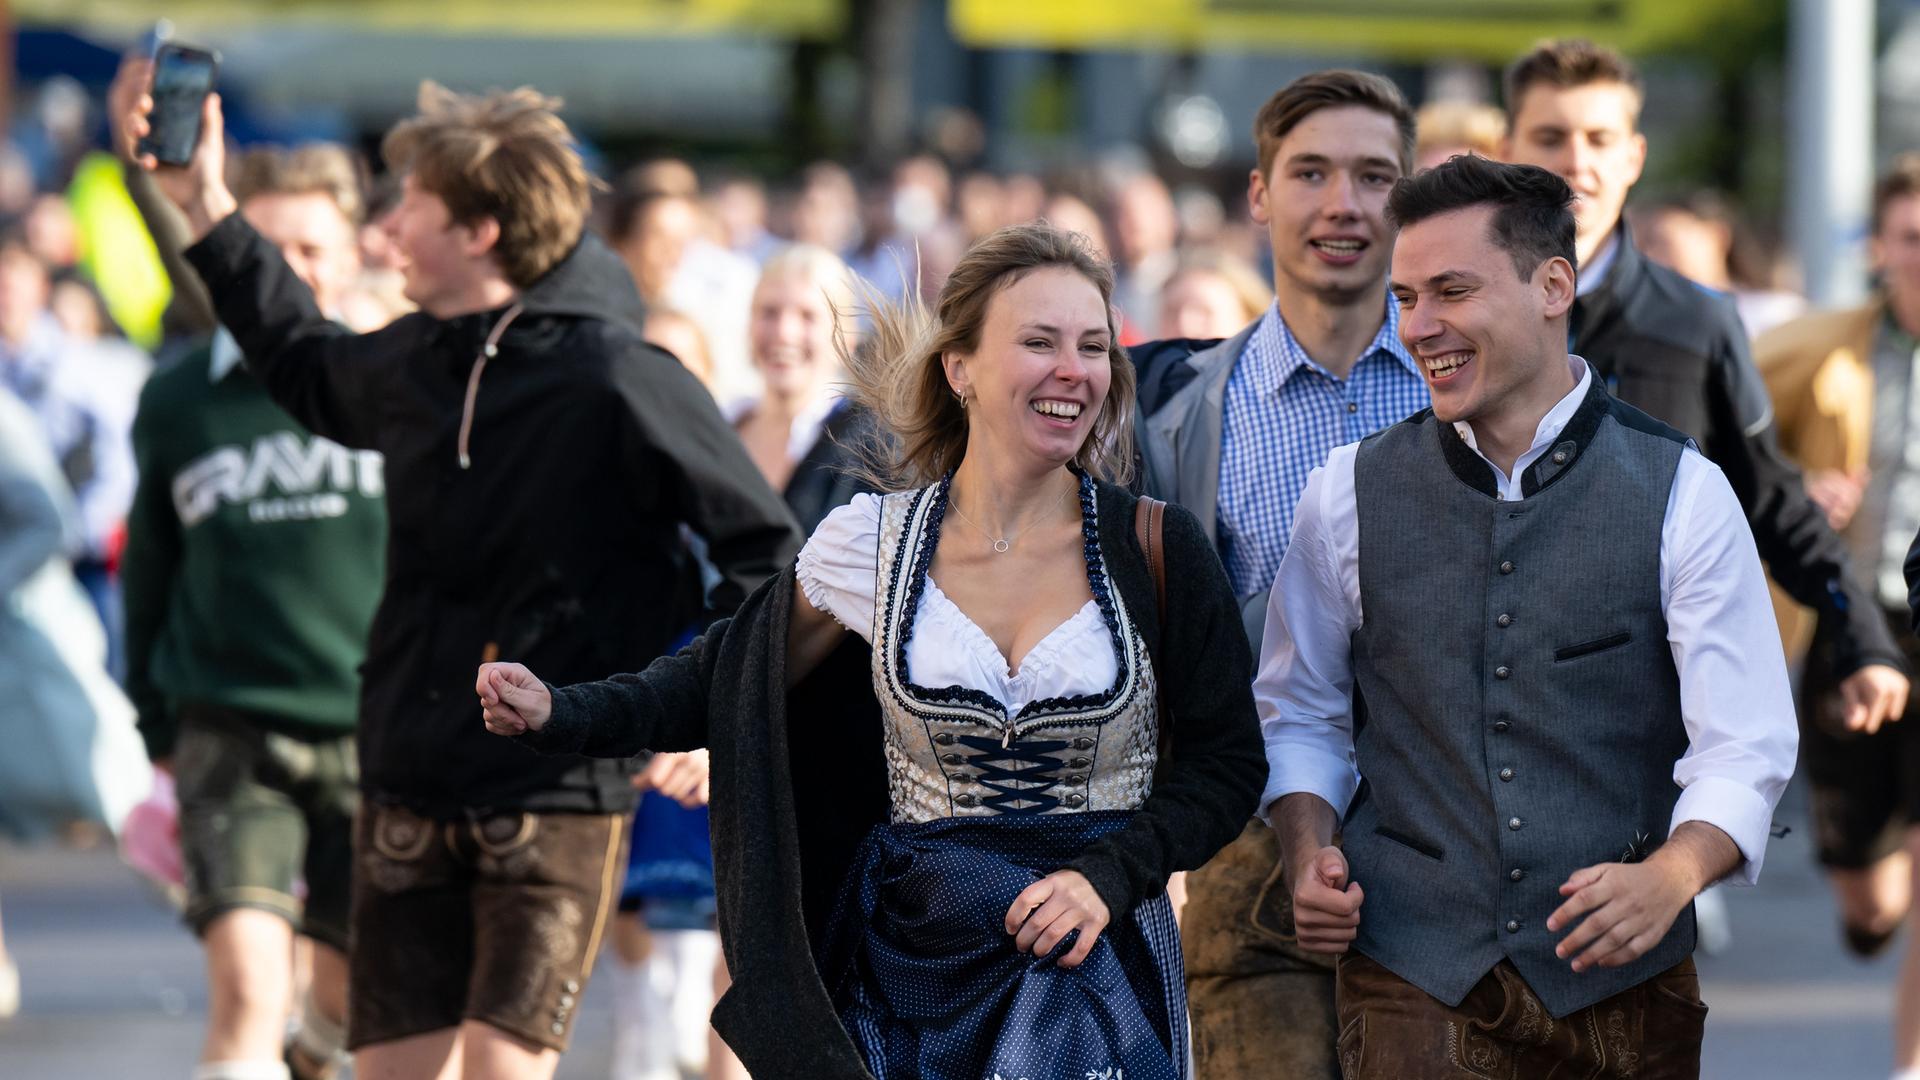 München - Oktoberfest endet - Vervierfachung der Corona-Inzidenz